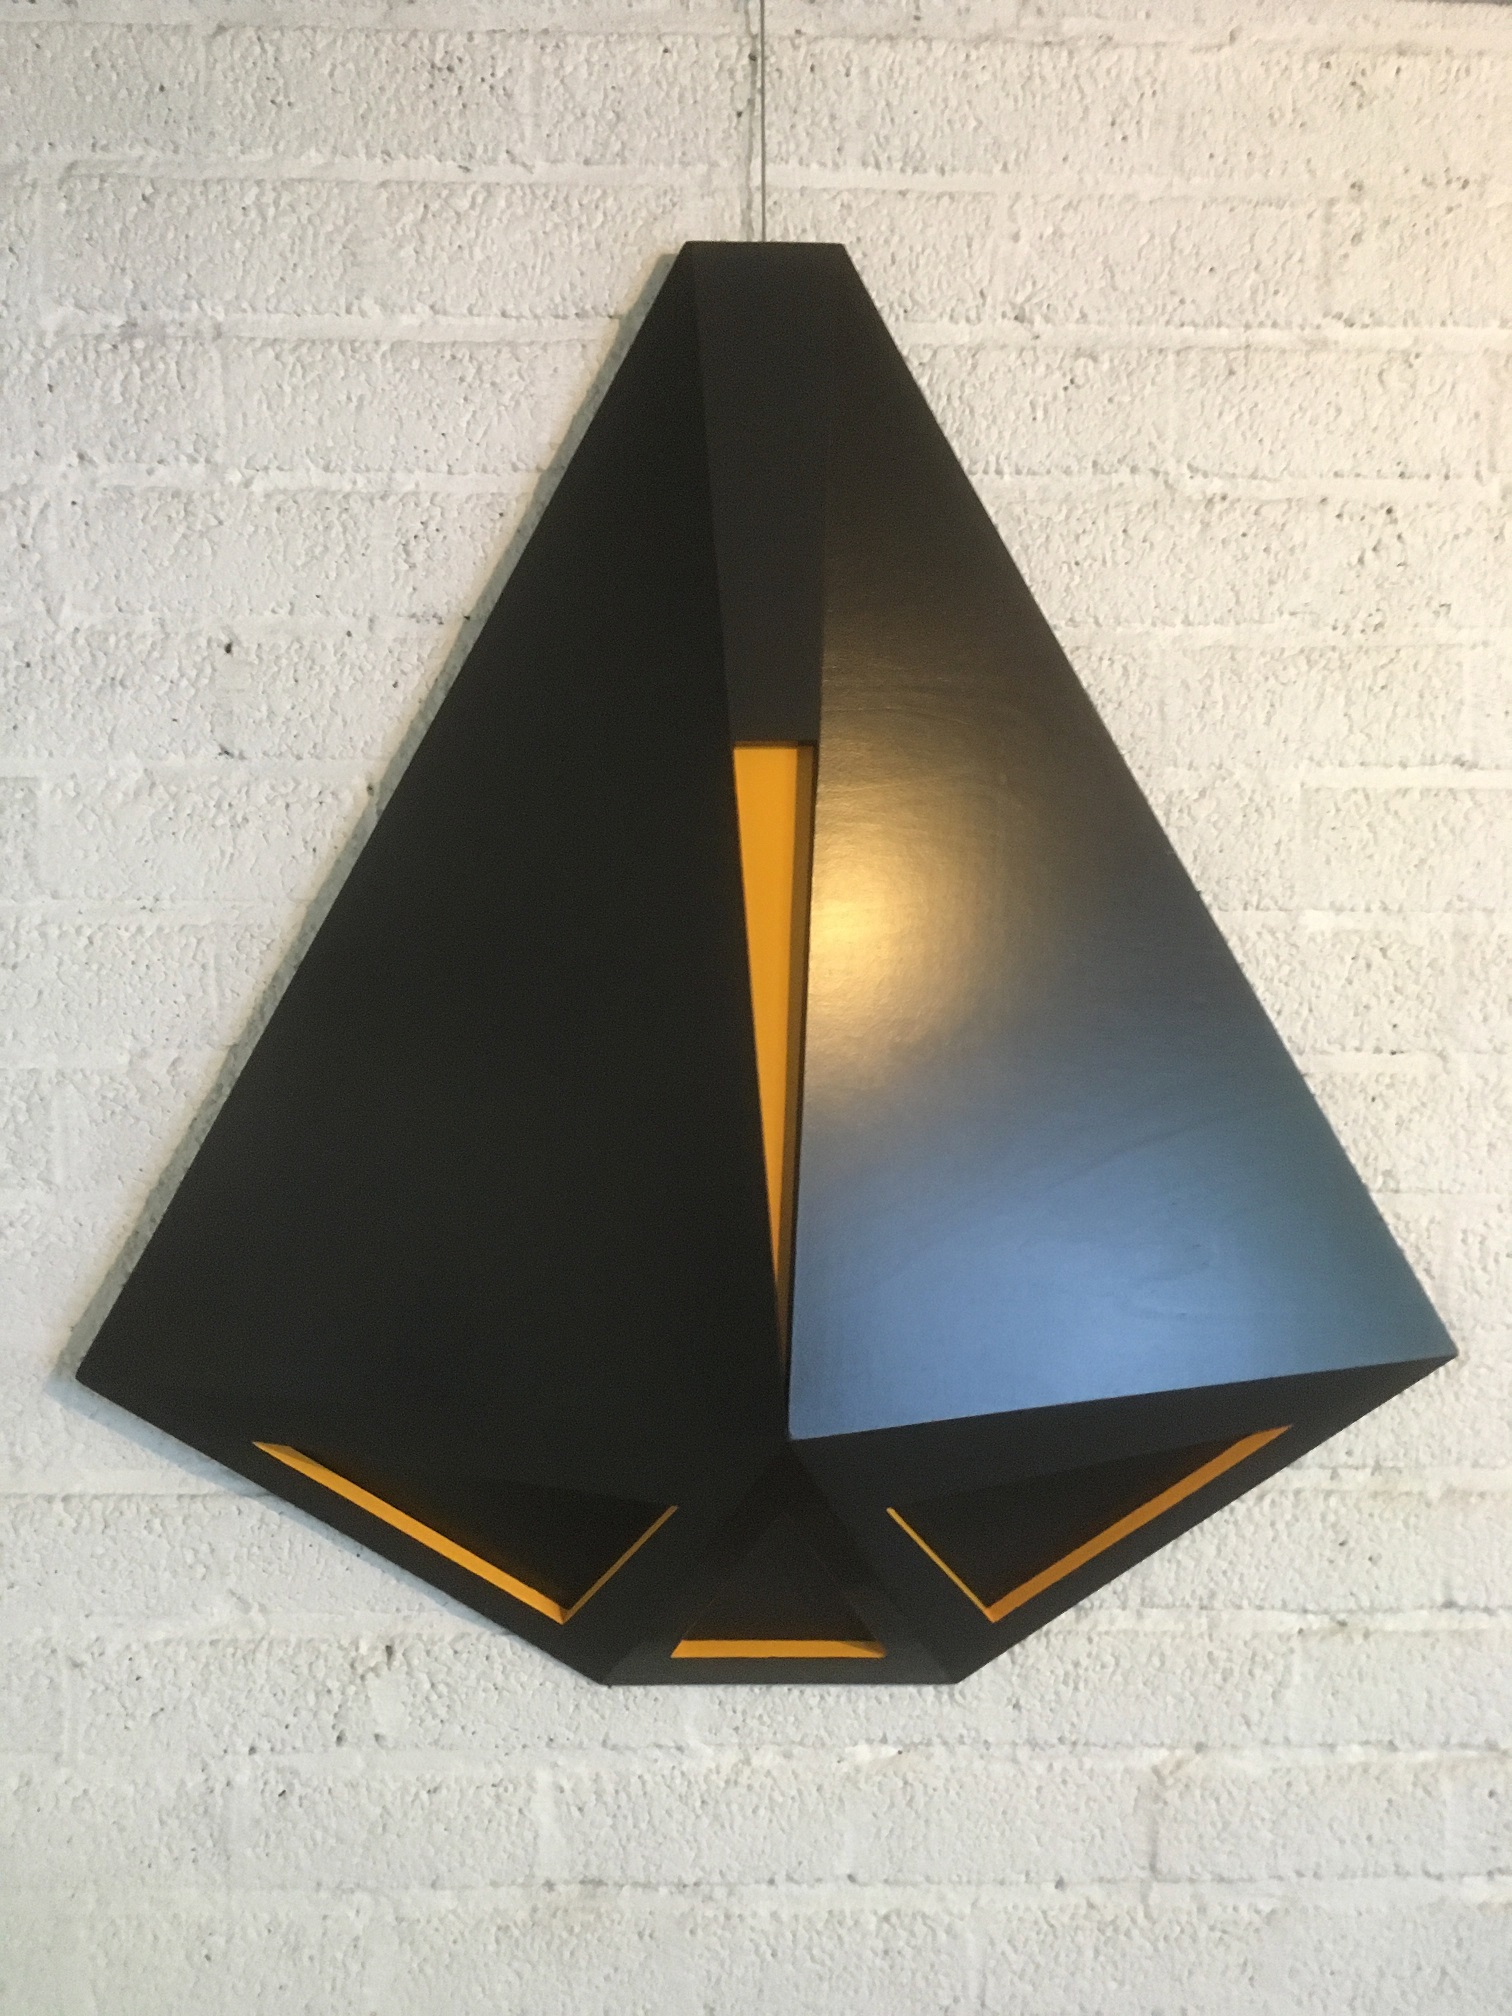 Eef de Graaf: 9 triangulaire vormen